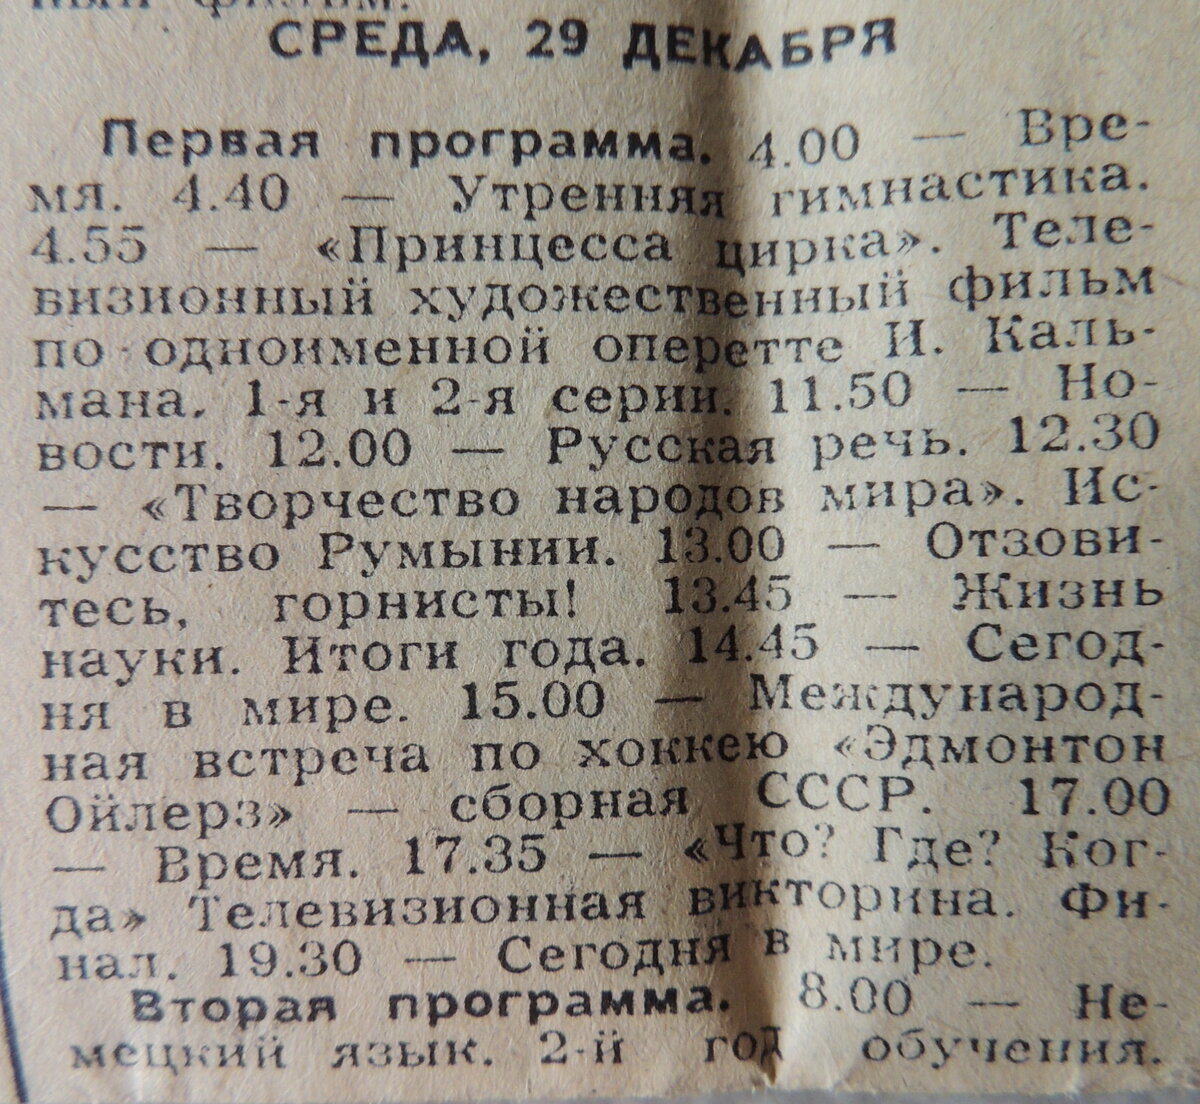 Передача 31 декабря. Советская программа телепередач. Телепрограмма советского телевидения. Программа передач 1982 года. Телепрограмма 80 годов.